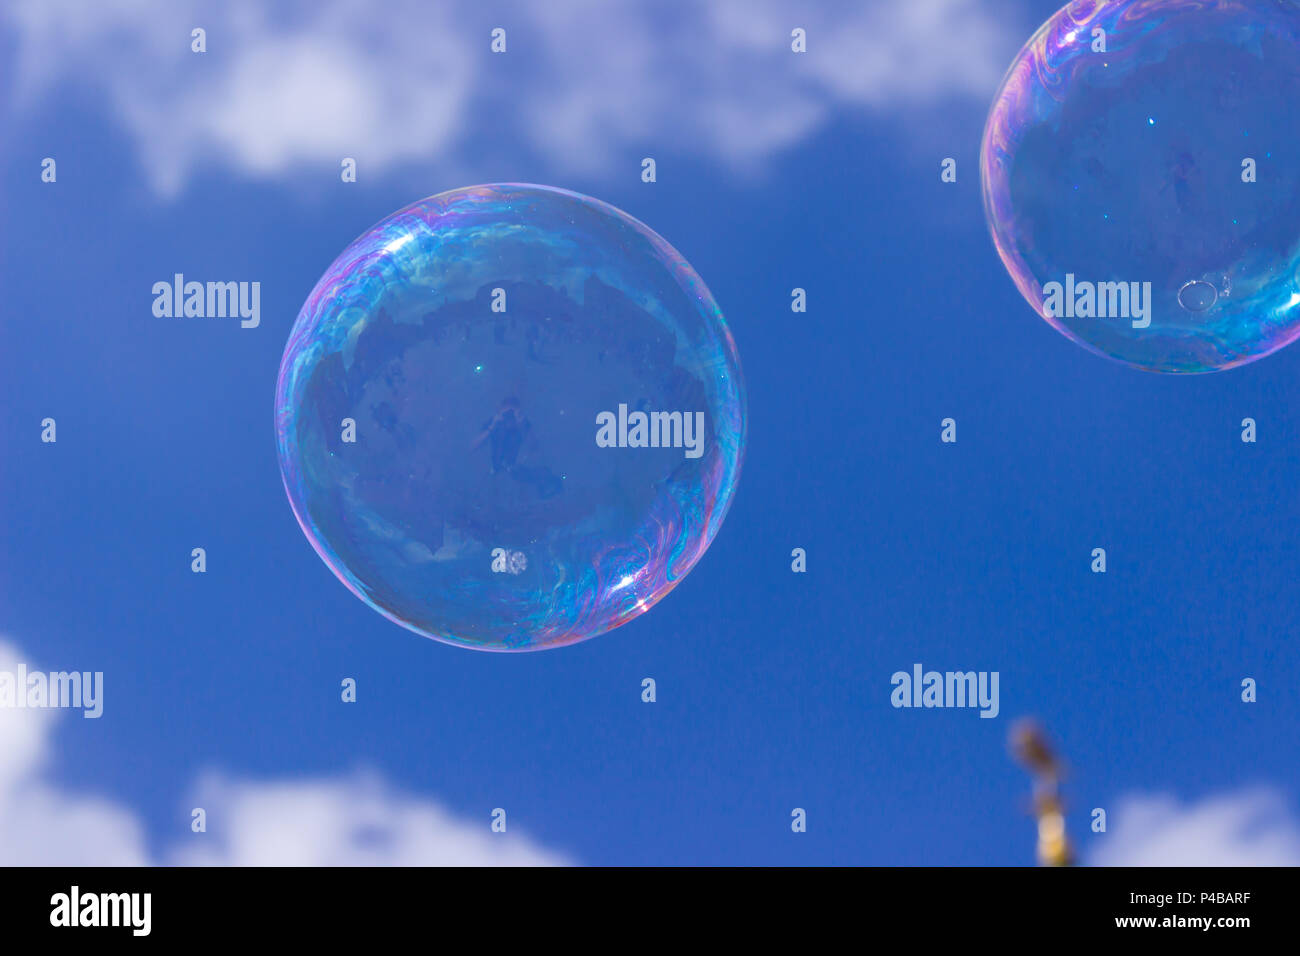 Une bulle de savon irisée flotte dans un superbe ciel bleu. Un coup d'œil à la bulle révèle le reflet du photographe et de City Plaza. Banque D'Images